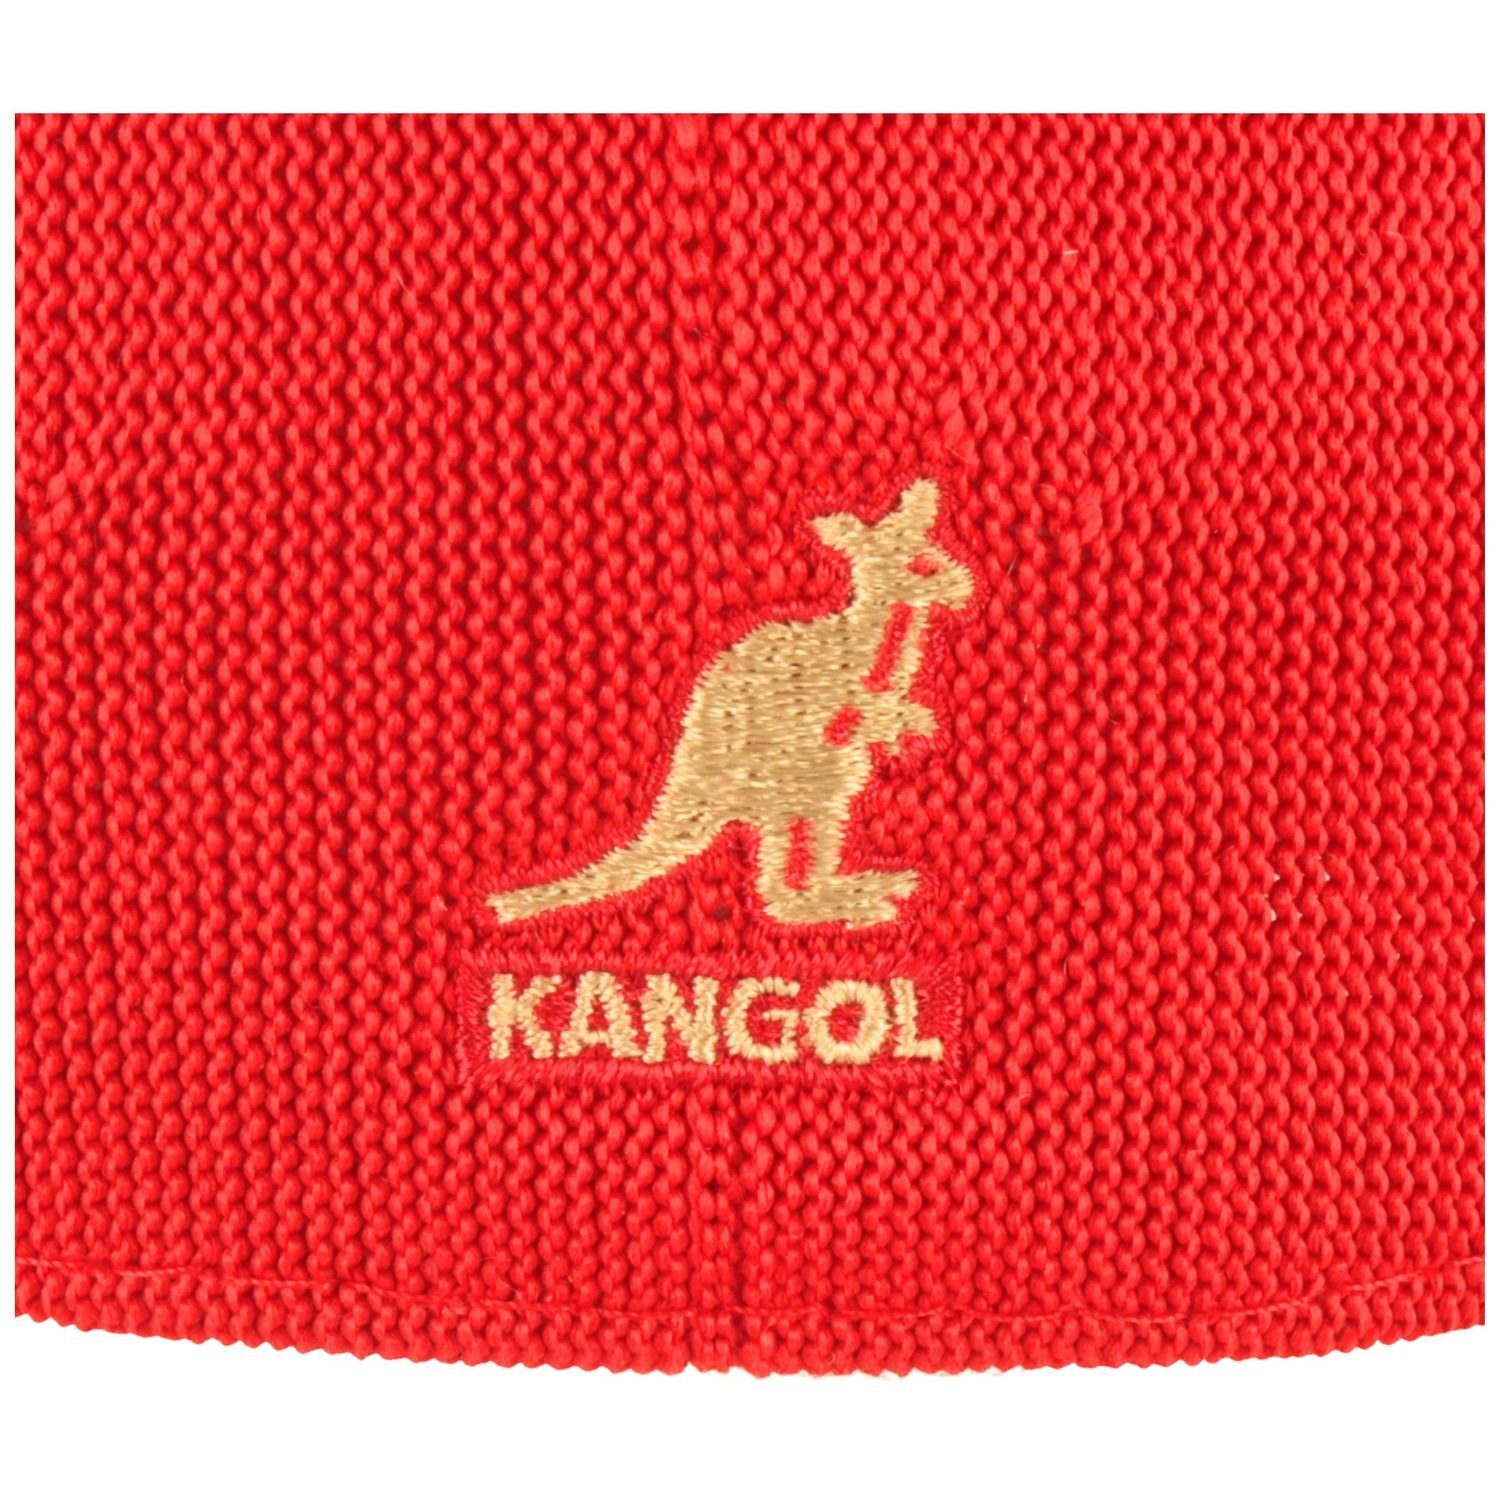 Kangol Schiebermütze SC613-rot luftig 507 Ventair Flatcap Tropic leicht